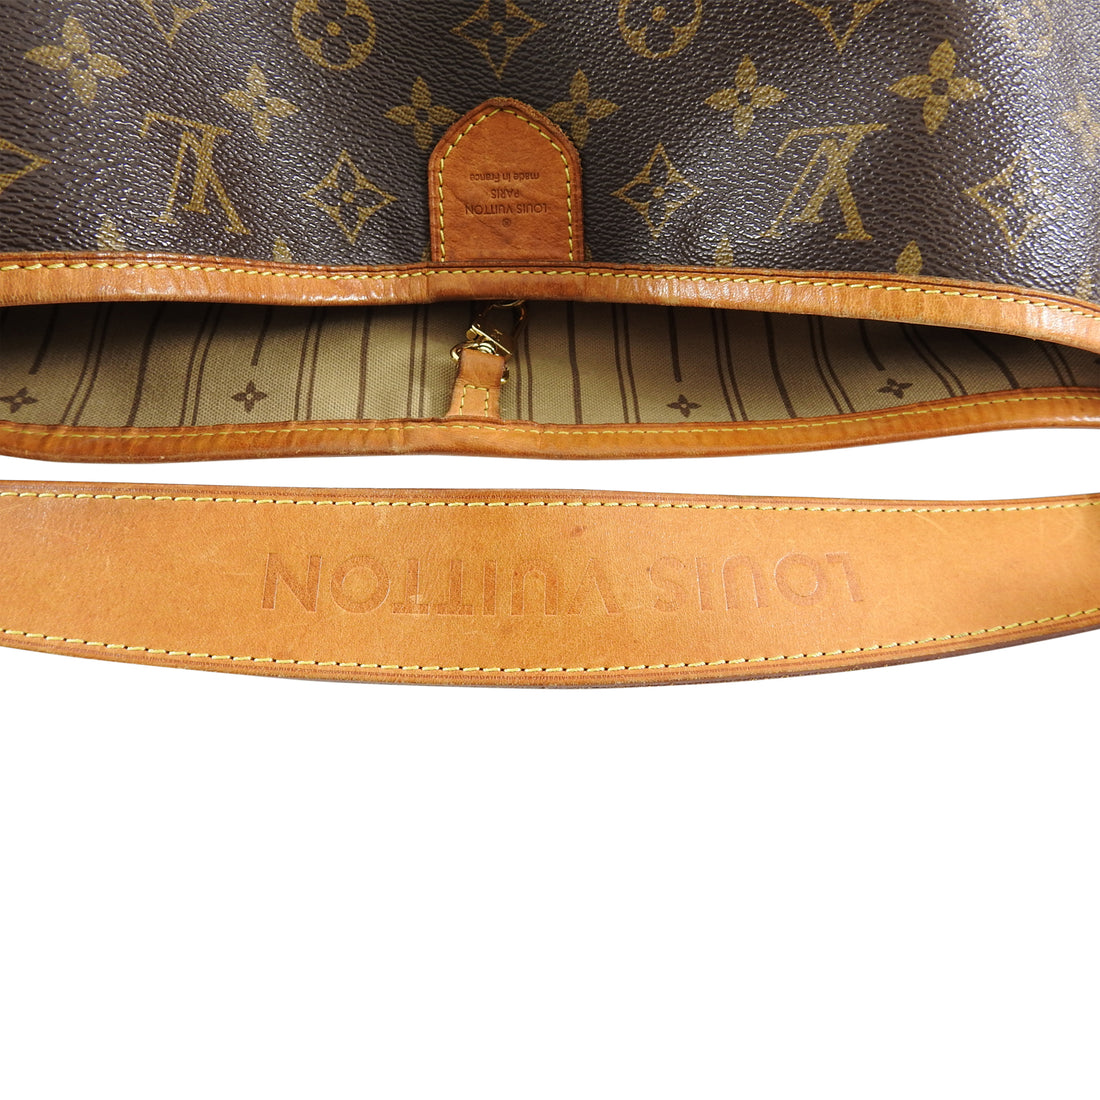 Louis Vuitton Monogram Canvas Delightful GM Bag – I MISS YOU VINTAGE